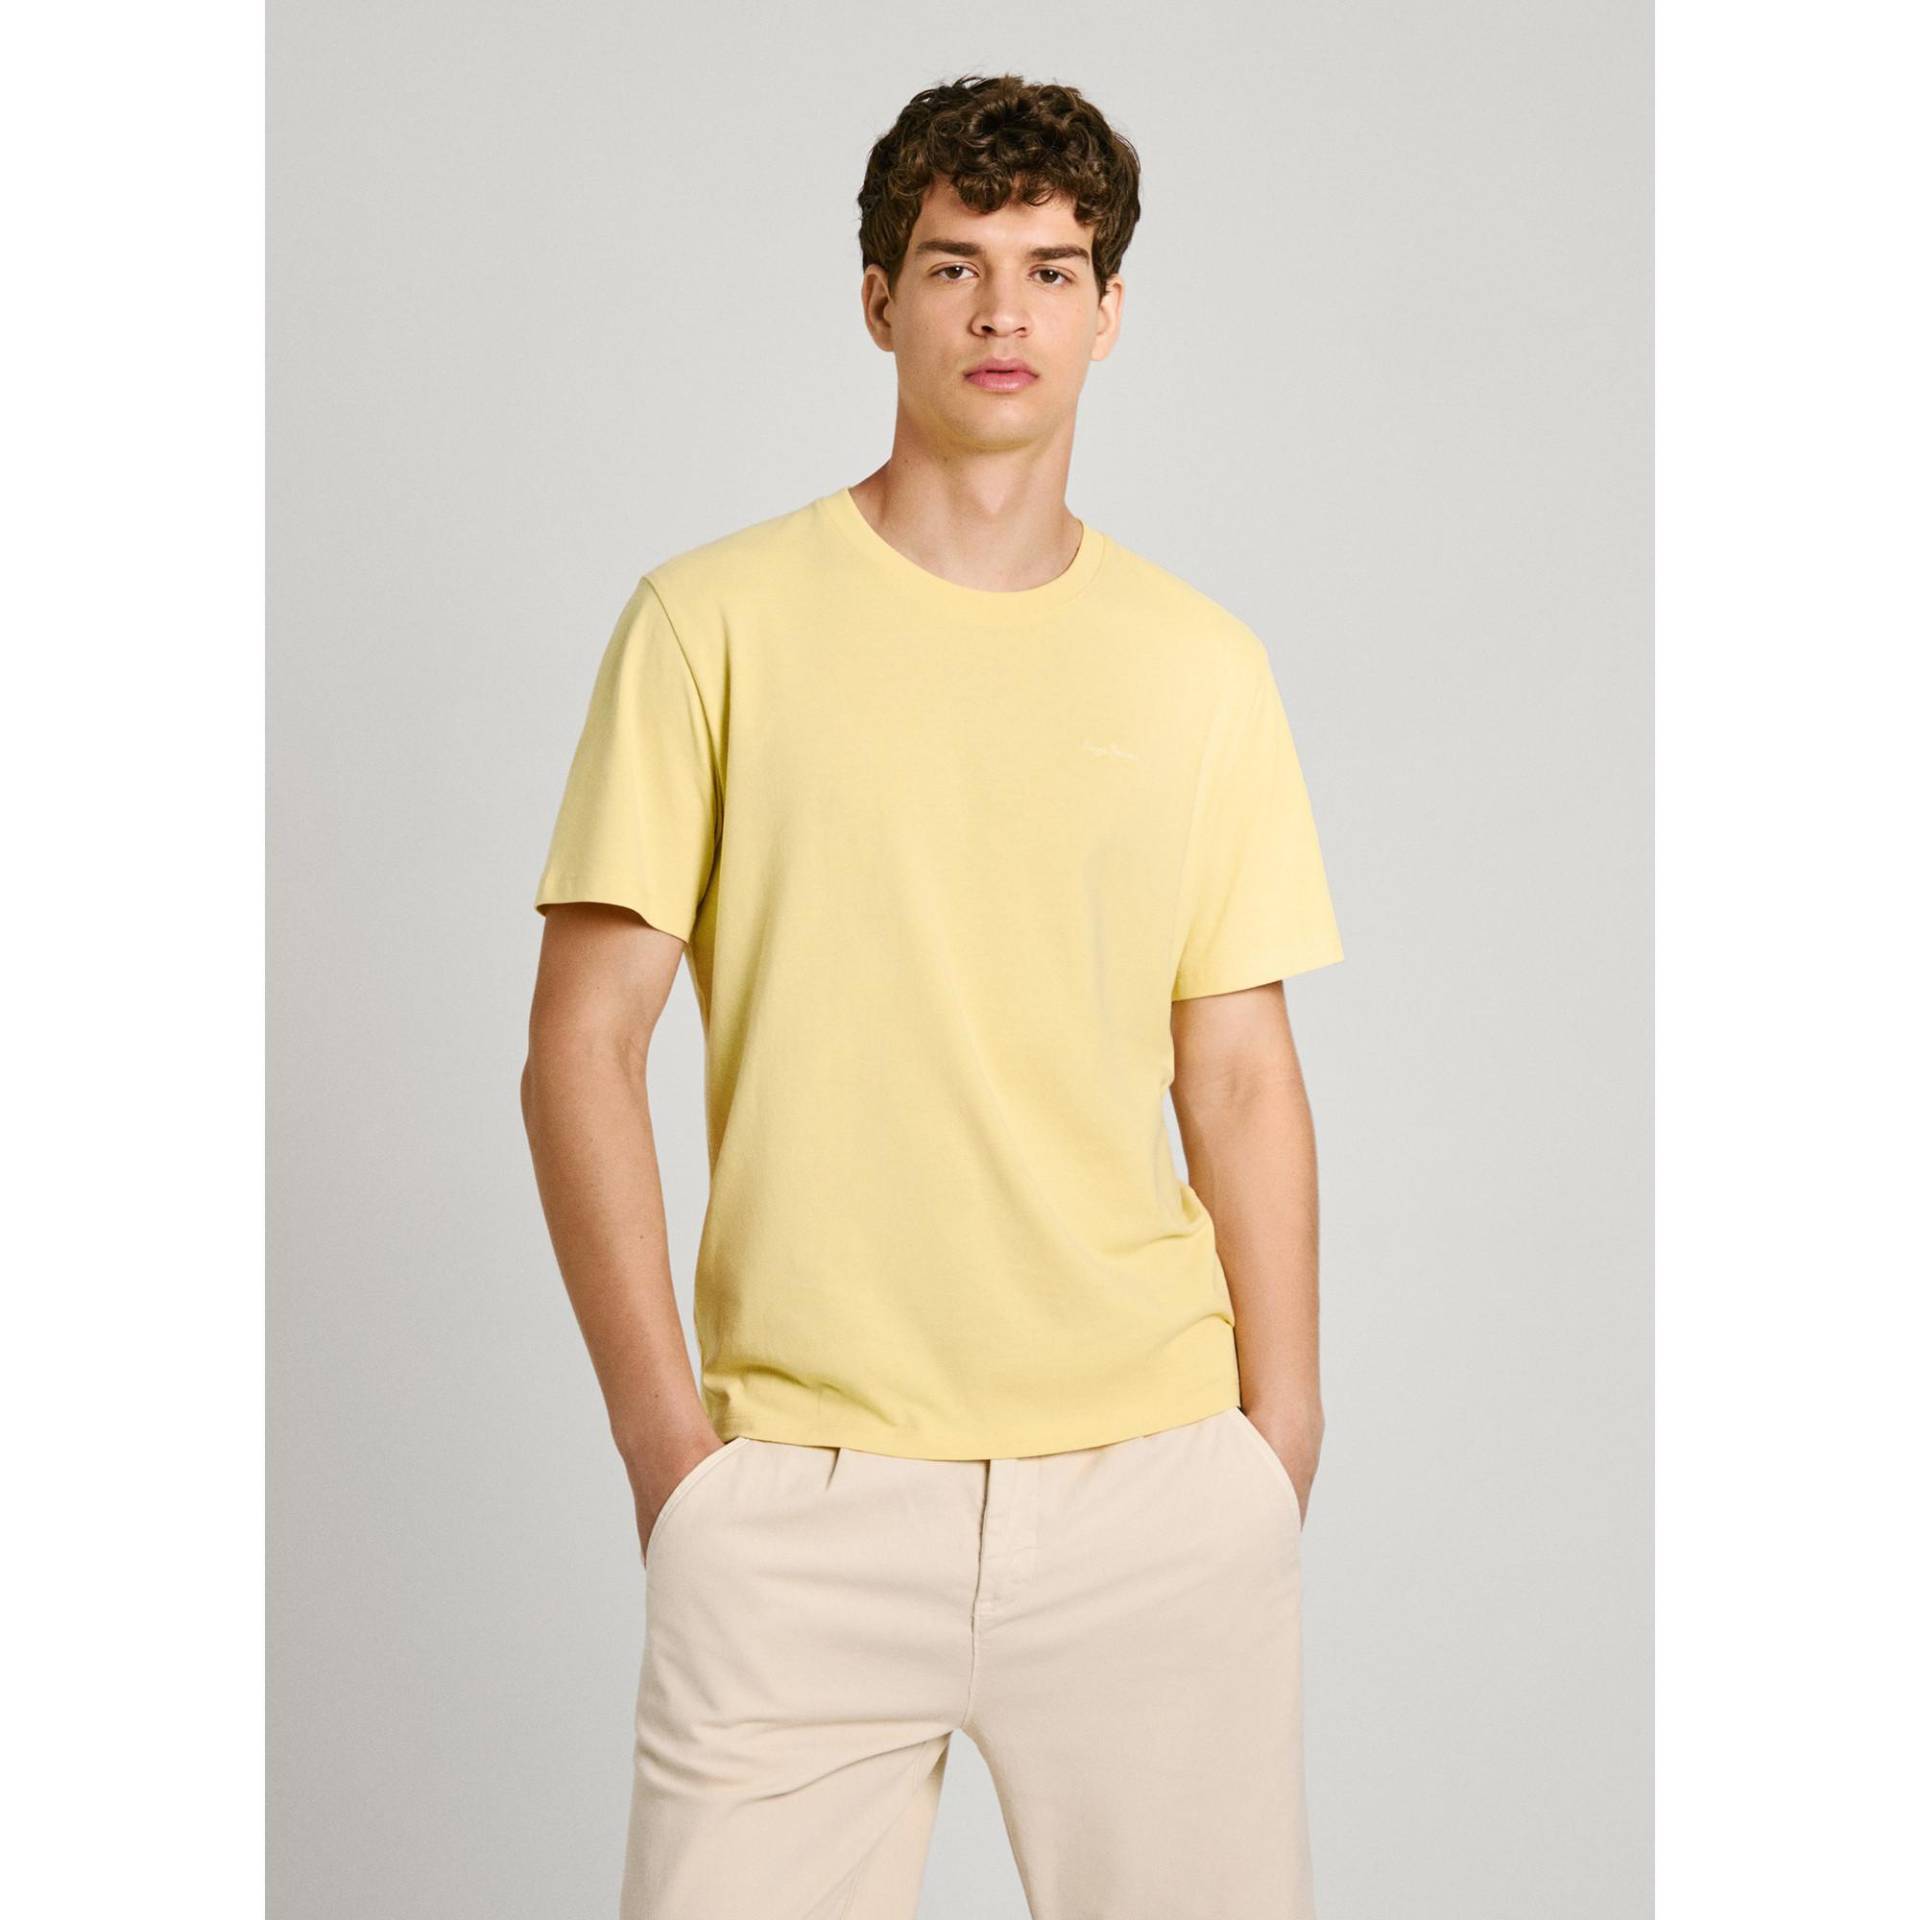 T-shirt Herren Gelb XL von Pepe Jeans